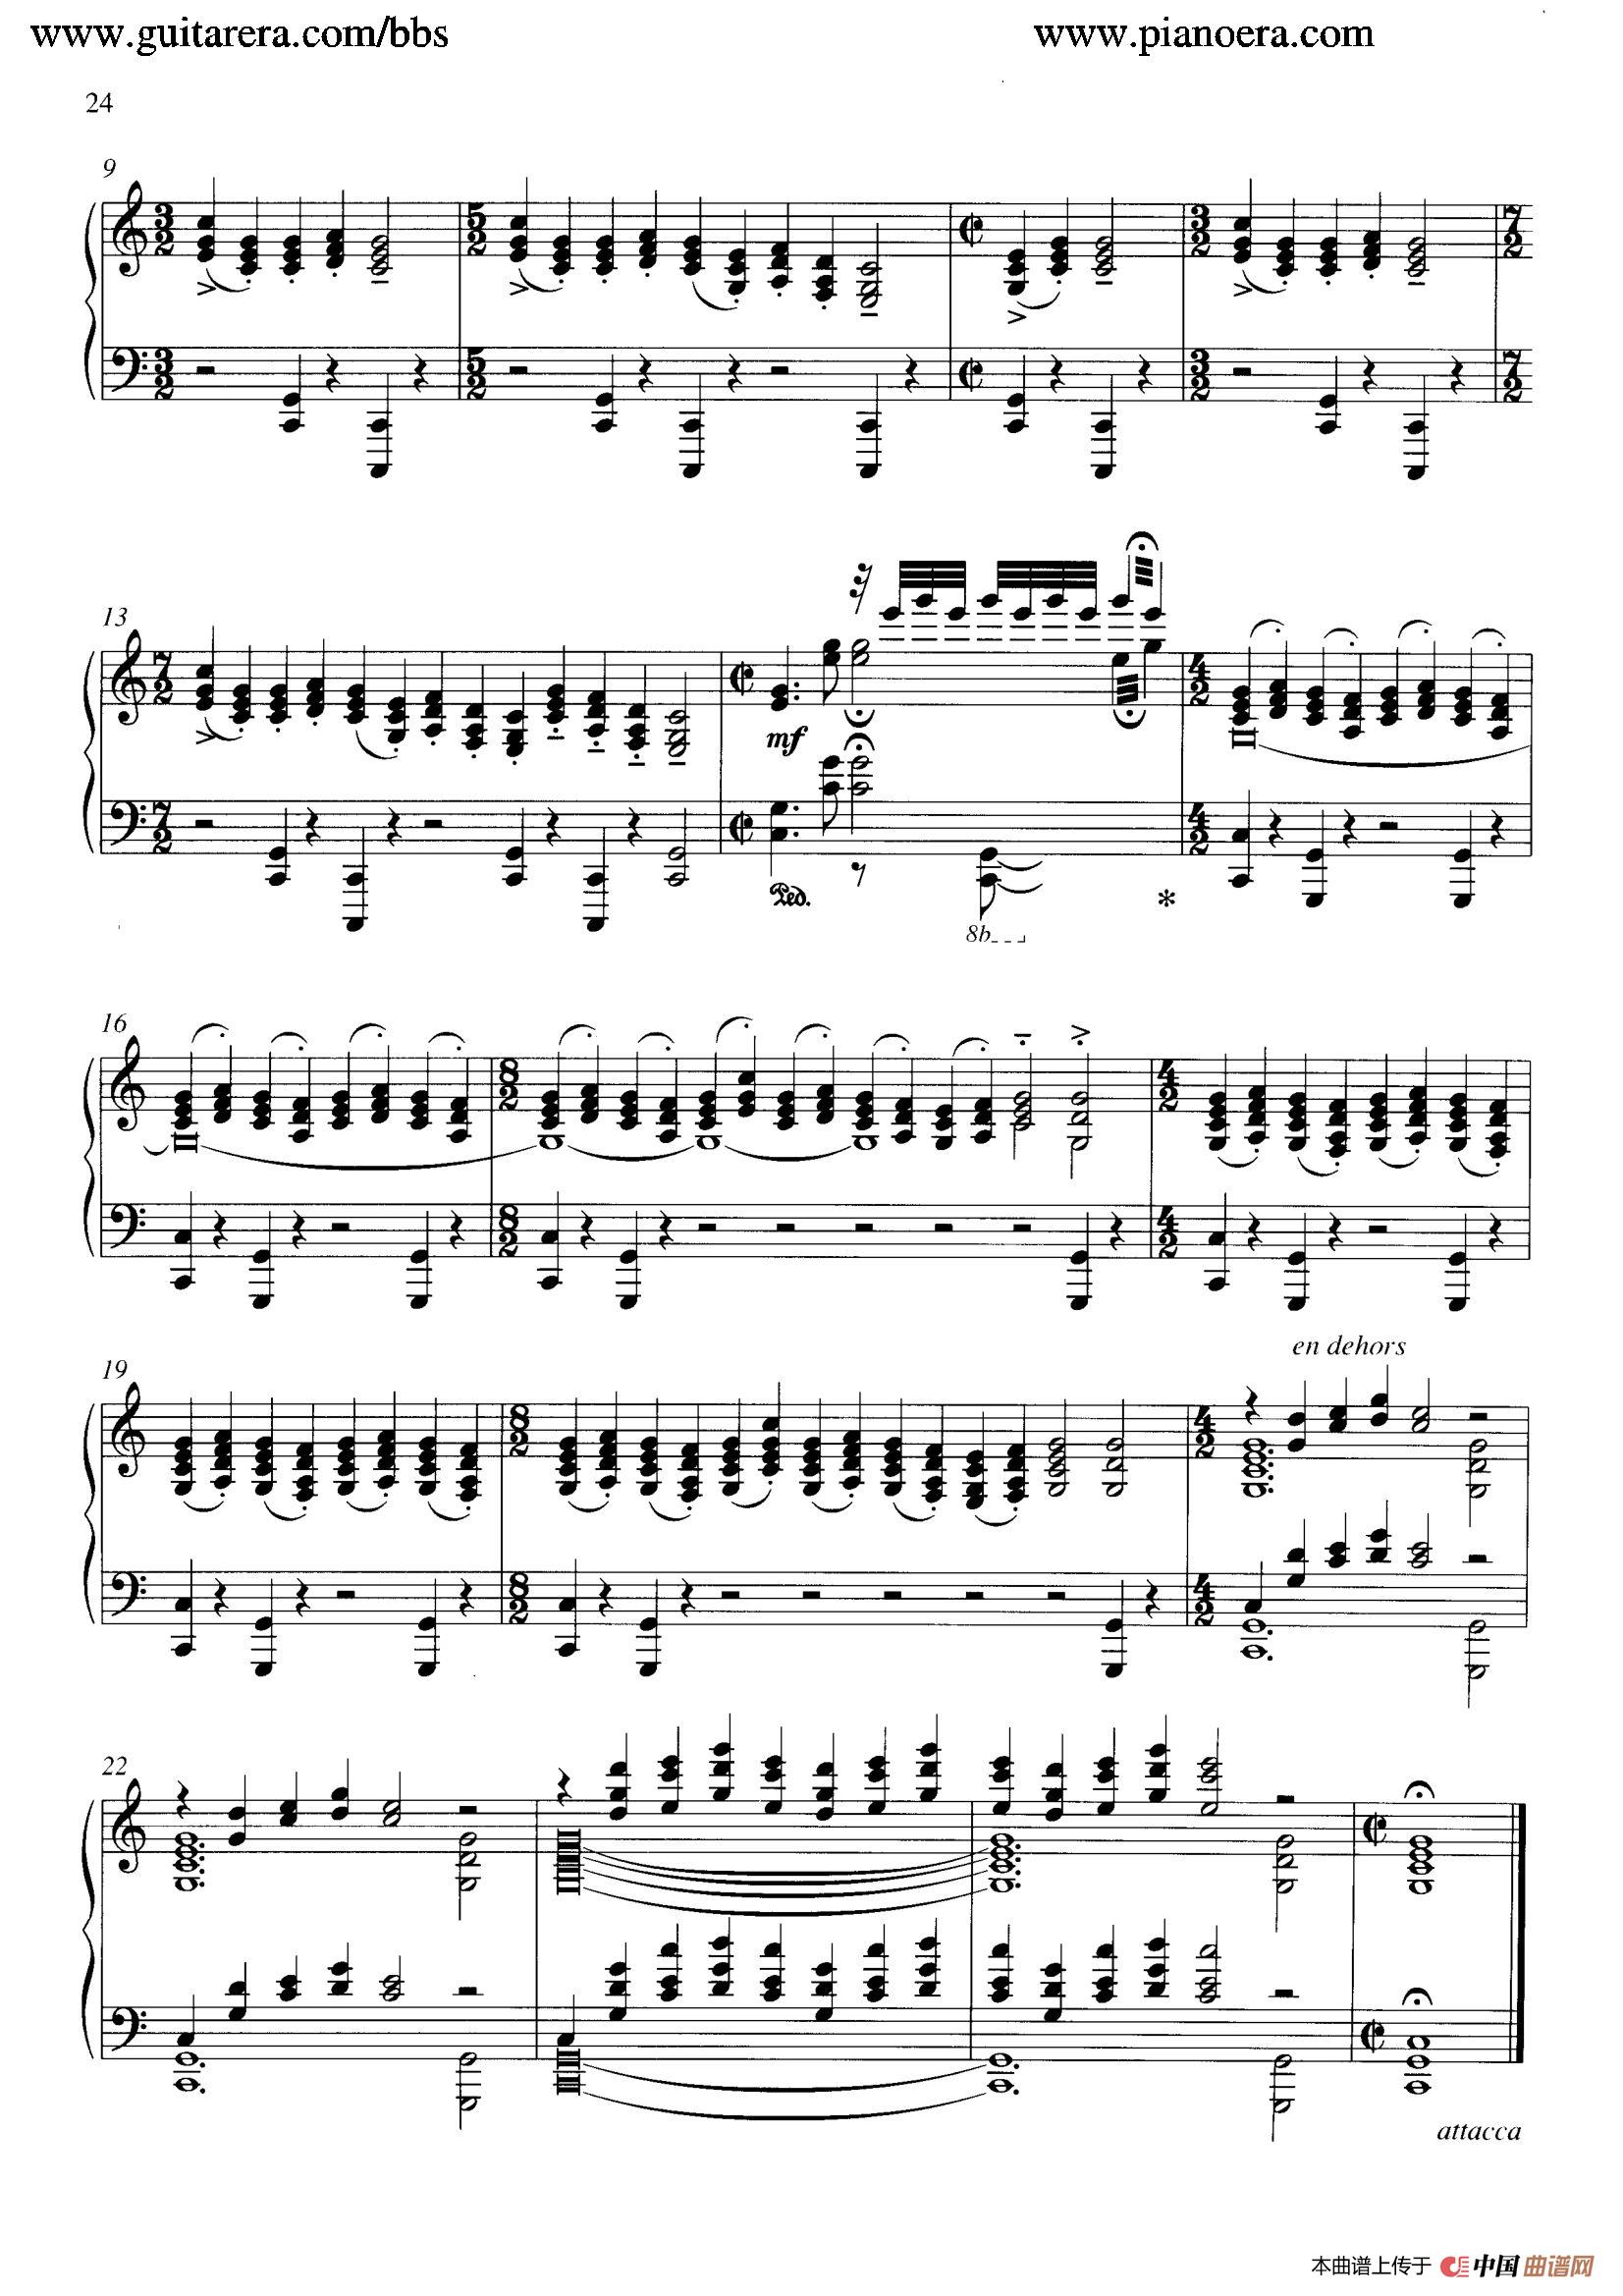 《Carmina Burana》钢琴曲谱图分享